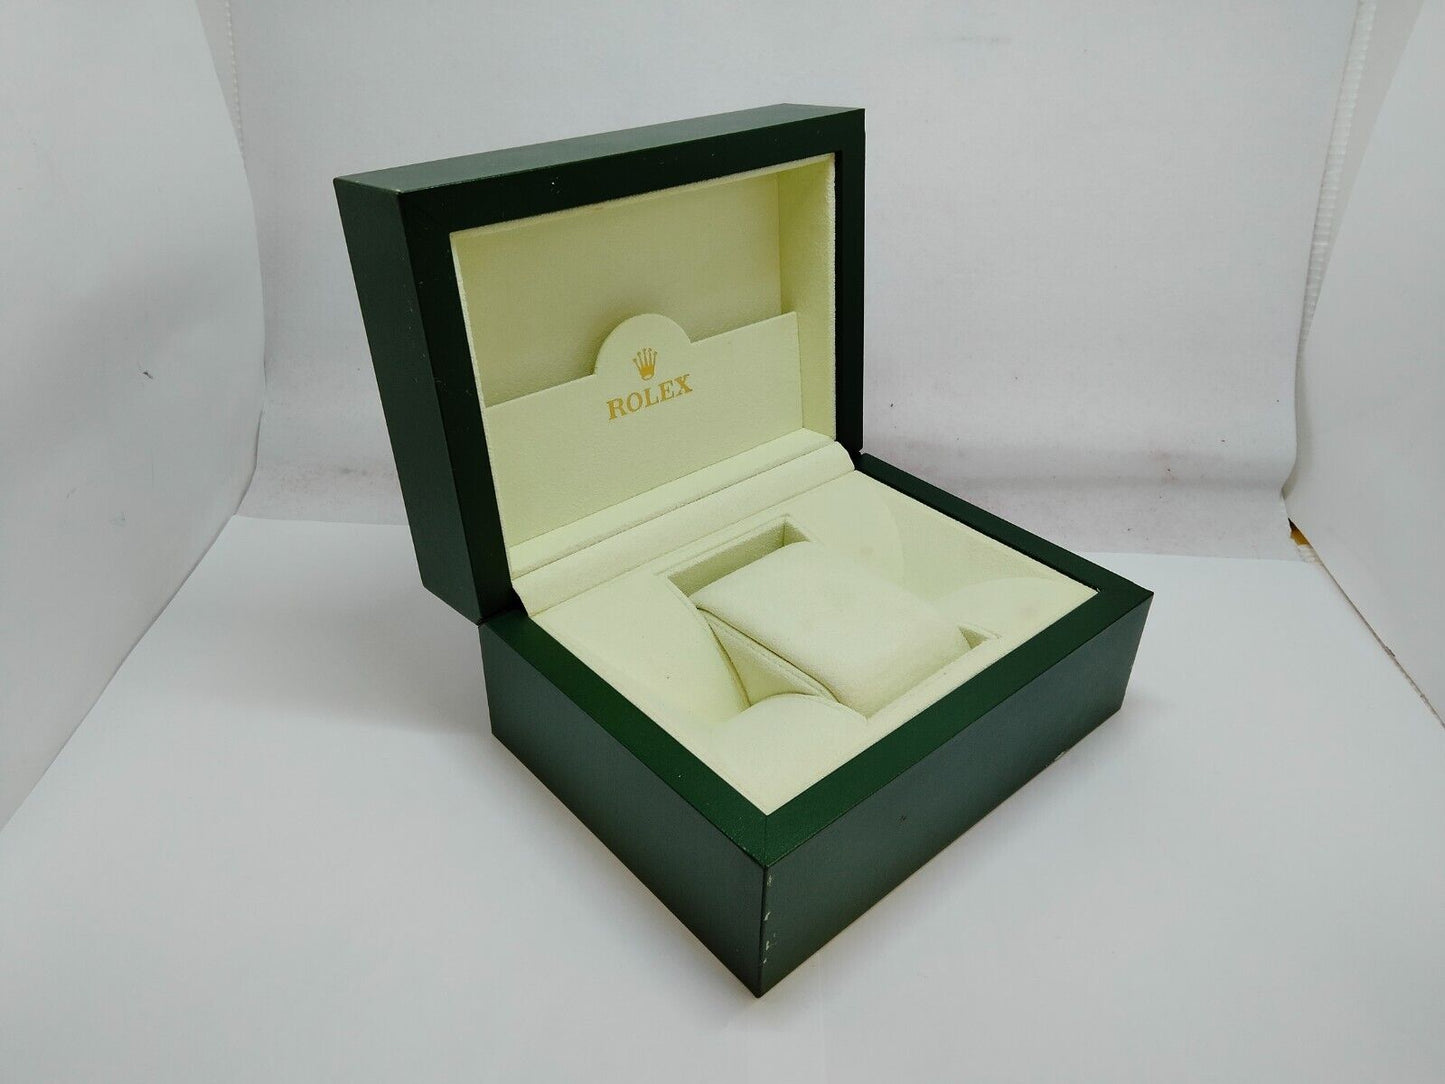 VINTAGE GENUINE ROLEX Green watch box case 30.00.08 wave white 0831002m5S